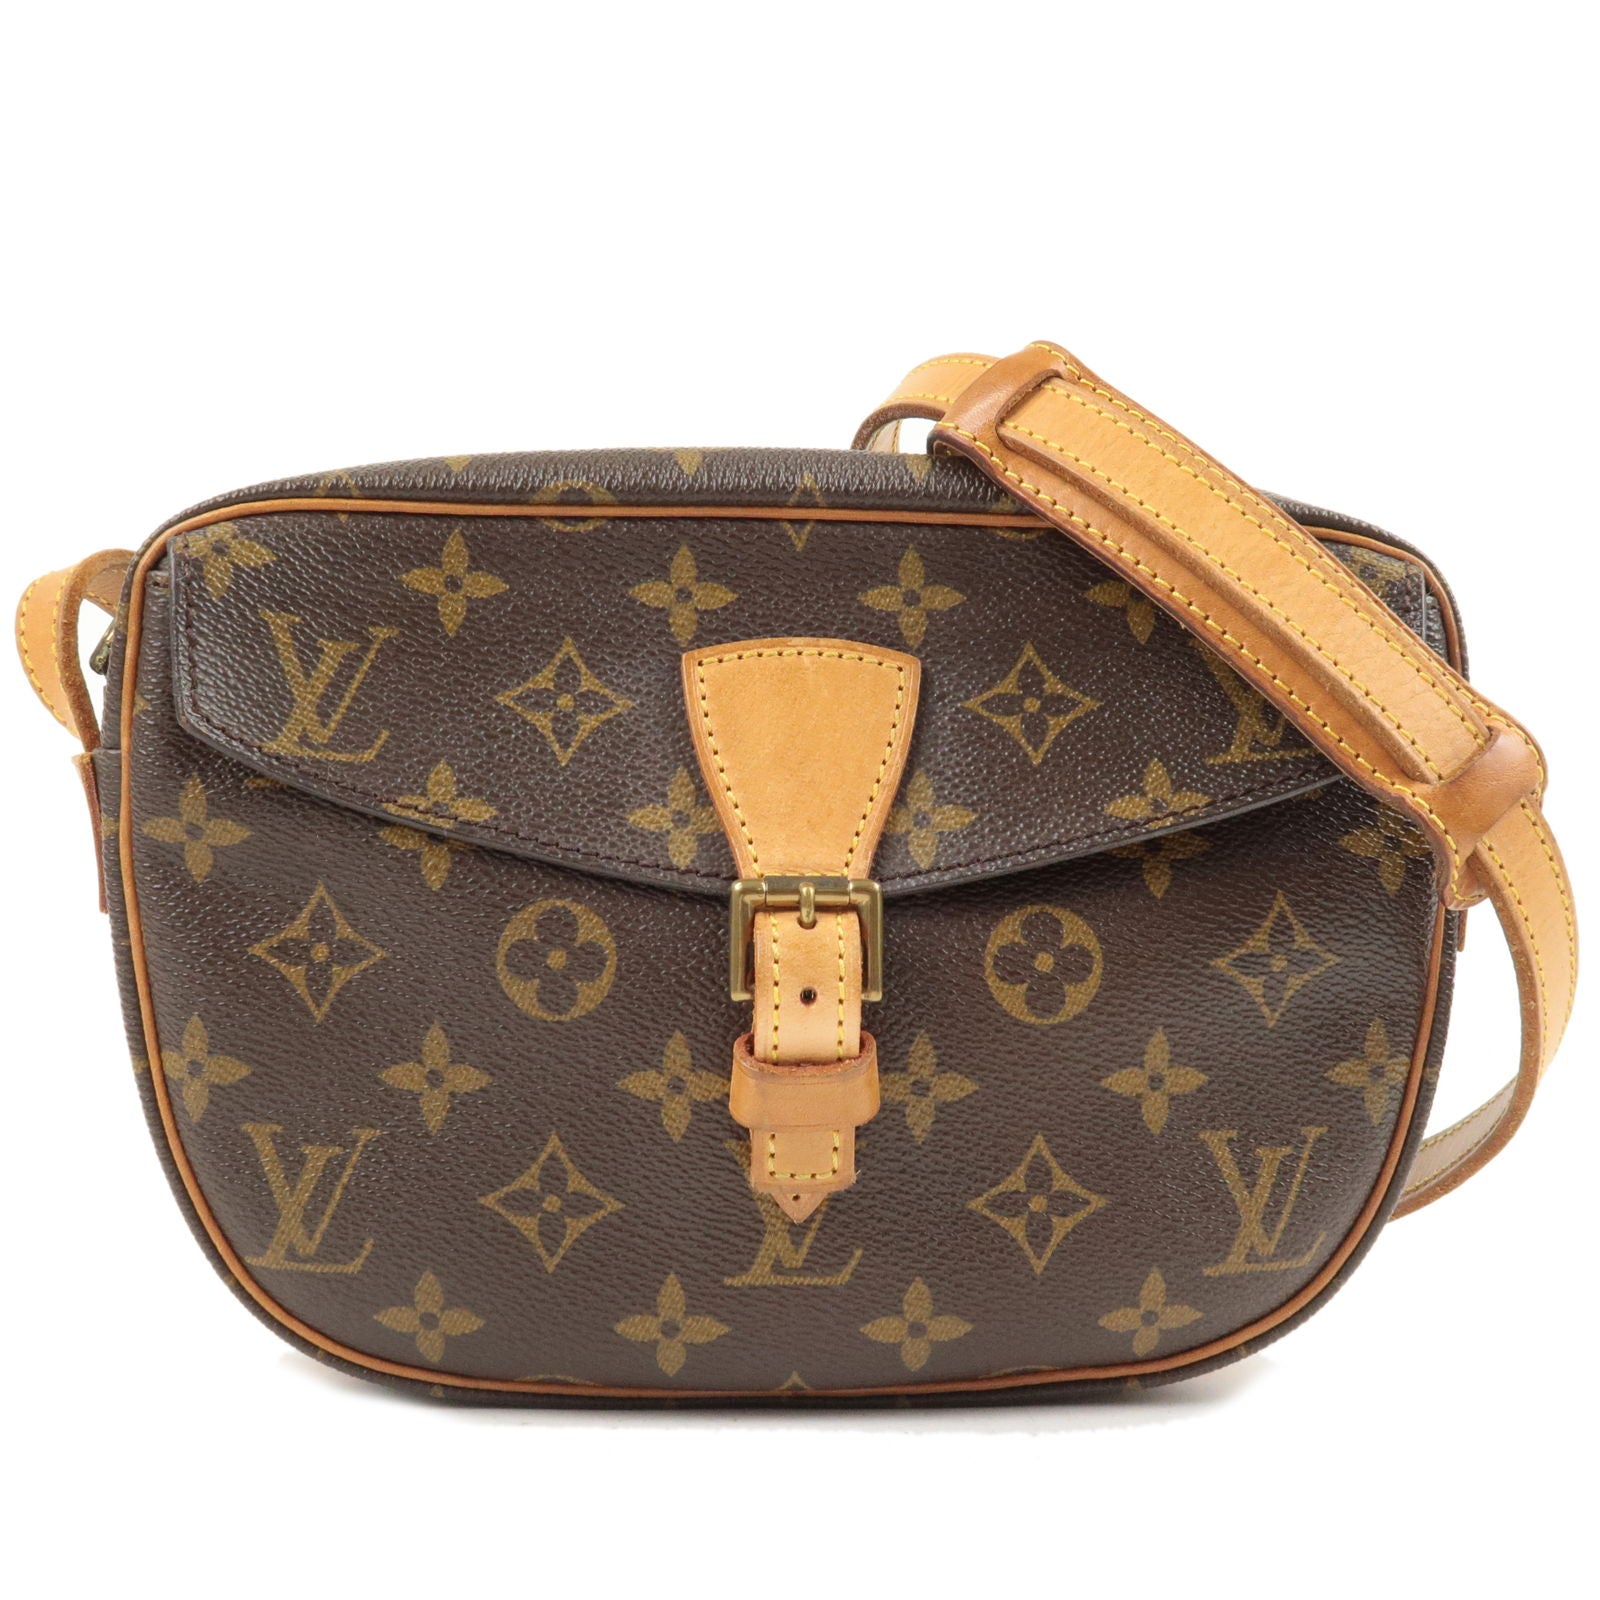 Authentic lv Louis Vuitton jeune fille pm size crossbody bag